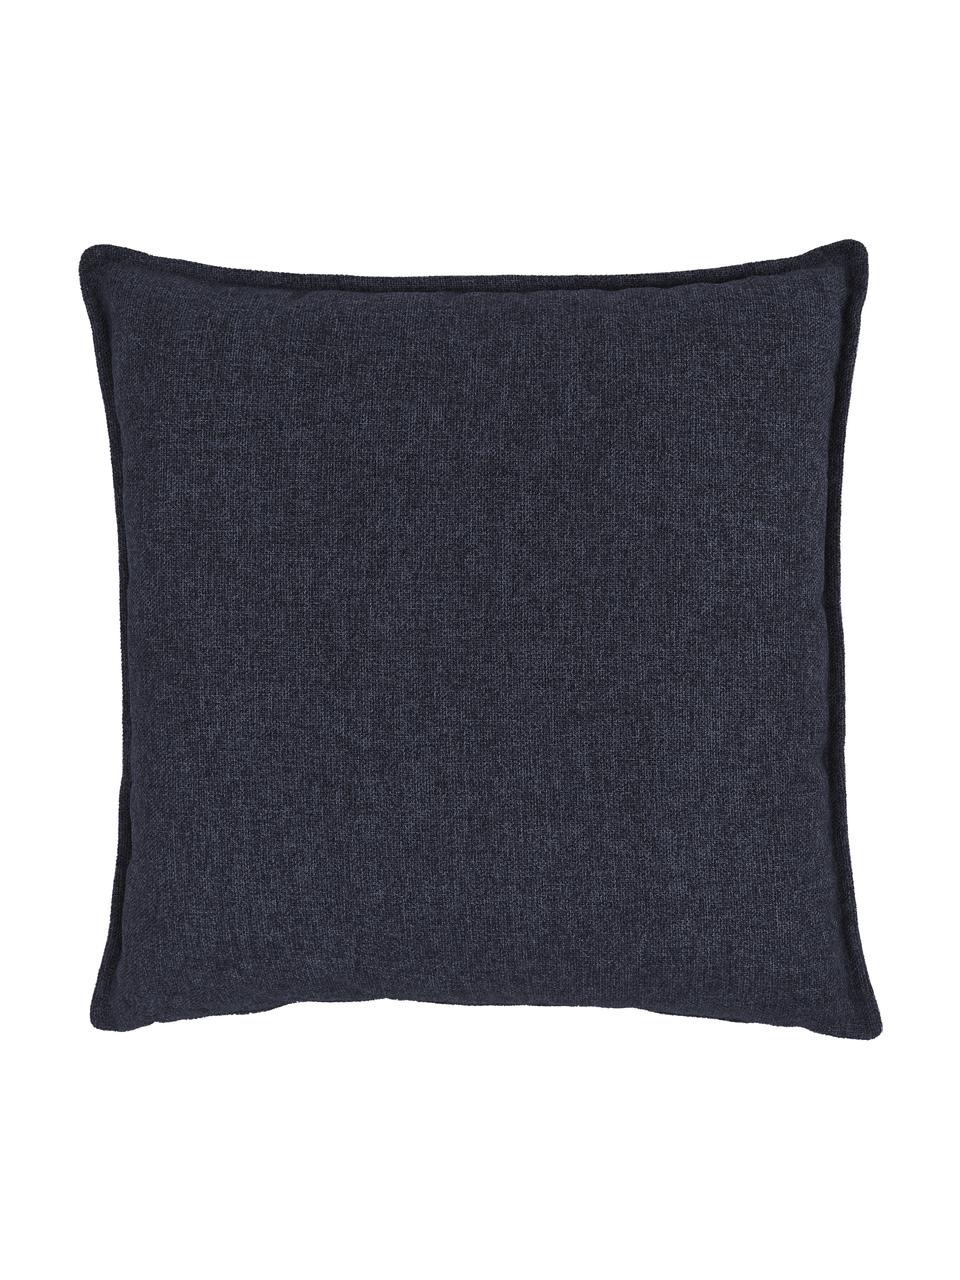 Coussin canapé Lennon, Tissu bleu foncé, larg. 60 x long. 60 cm